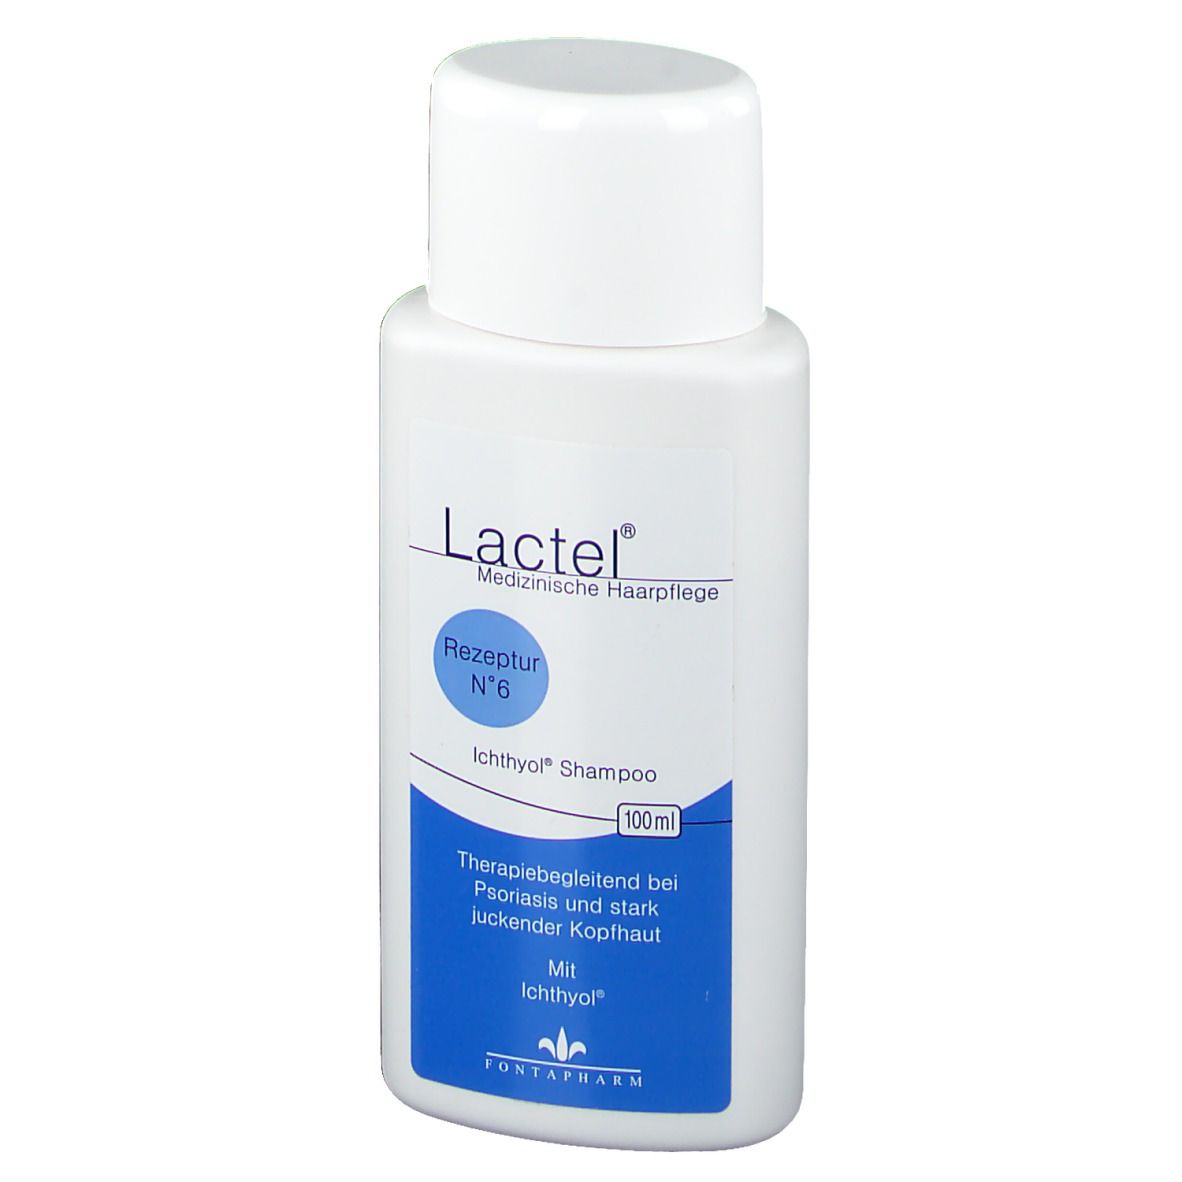 Lactel® Nr. 6 Ichthyol Shampoo